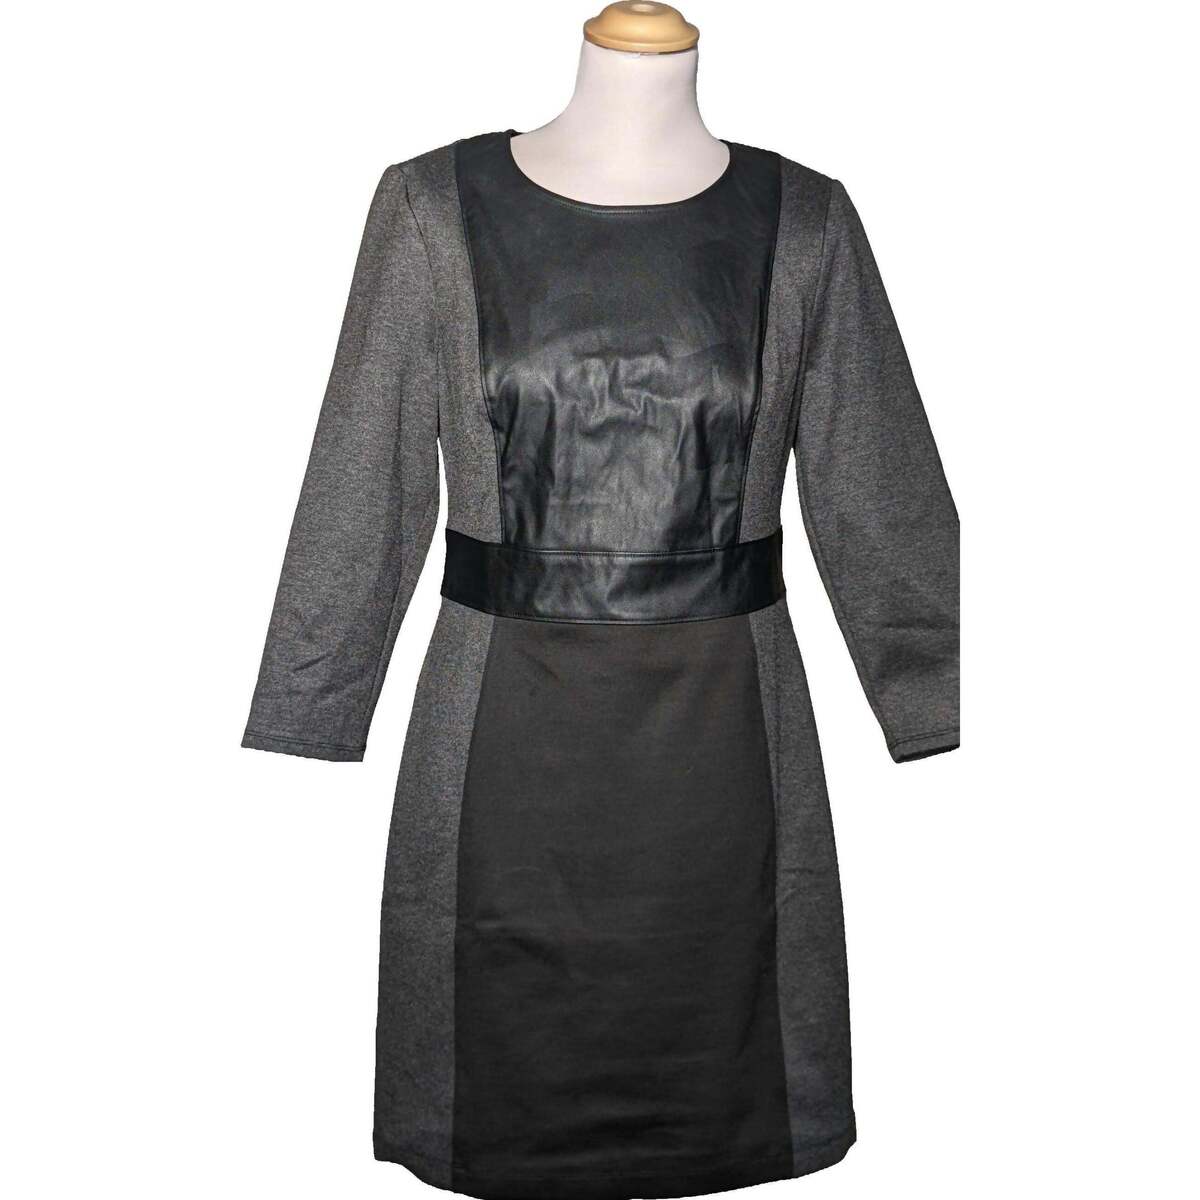 Vêtements Femme Robes courtes Bcbgmaxazria robe courte  38 - T2 - M Gris Gris